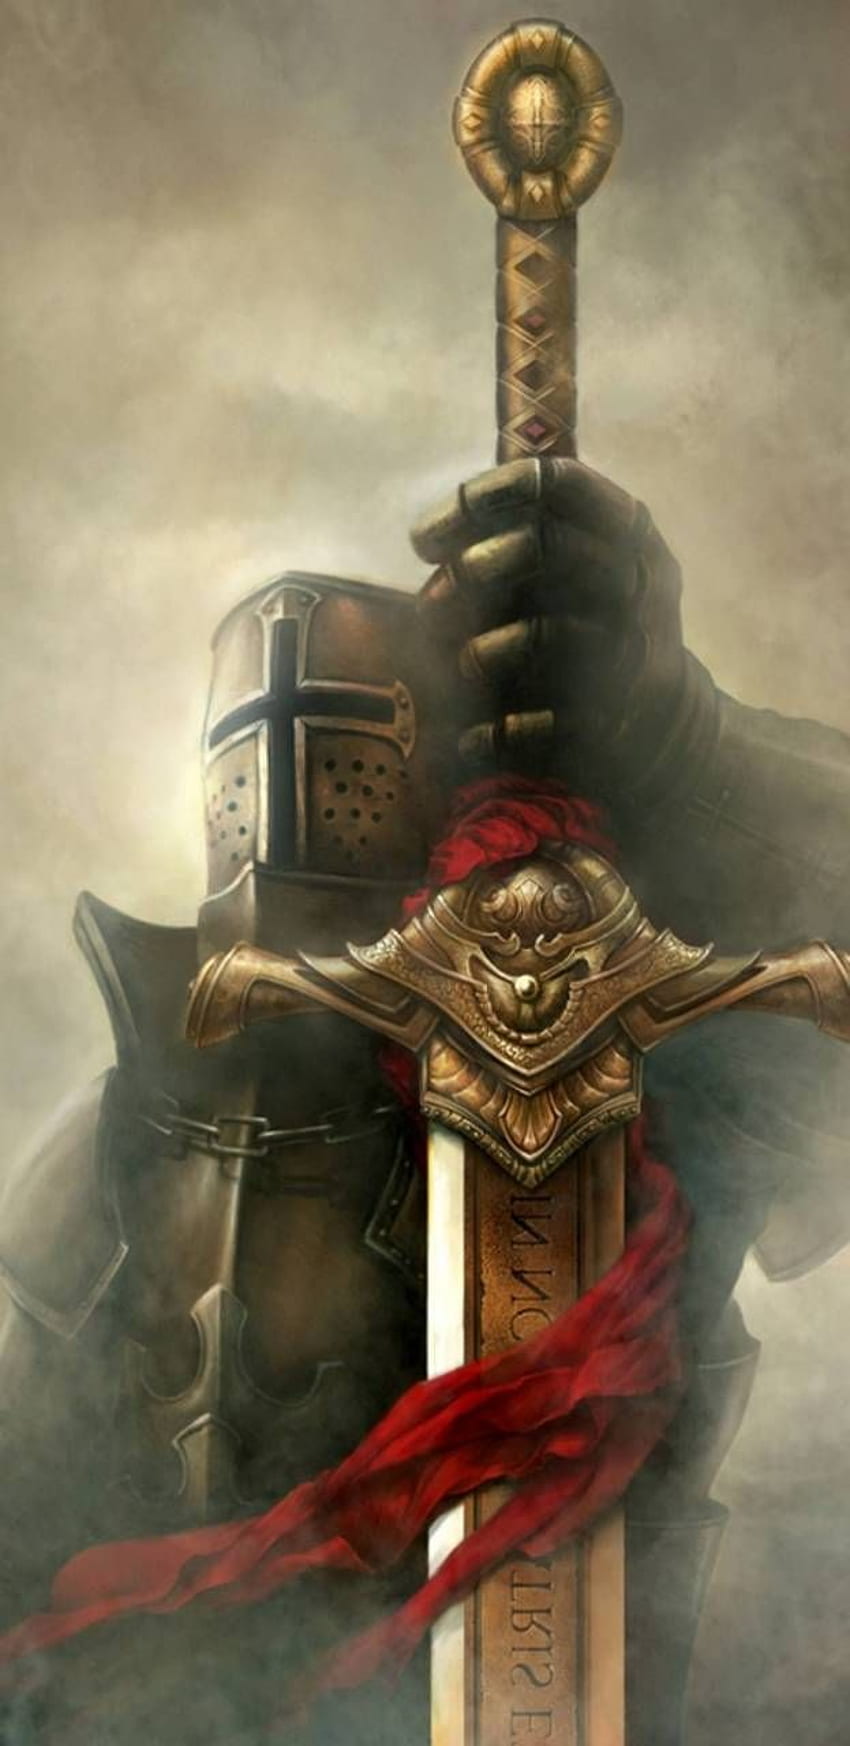 GOLDEN KNIGHT. Knight tattoo, Templar knight tattoo, Knight sword, Templar  iPhone HD phone wallpaper | Pxfuel